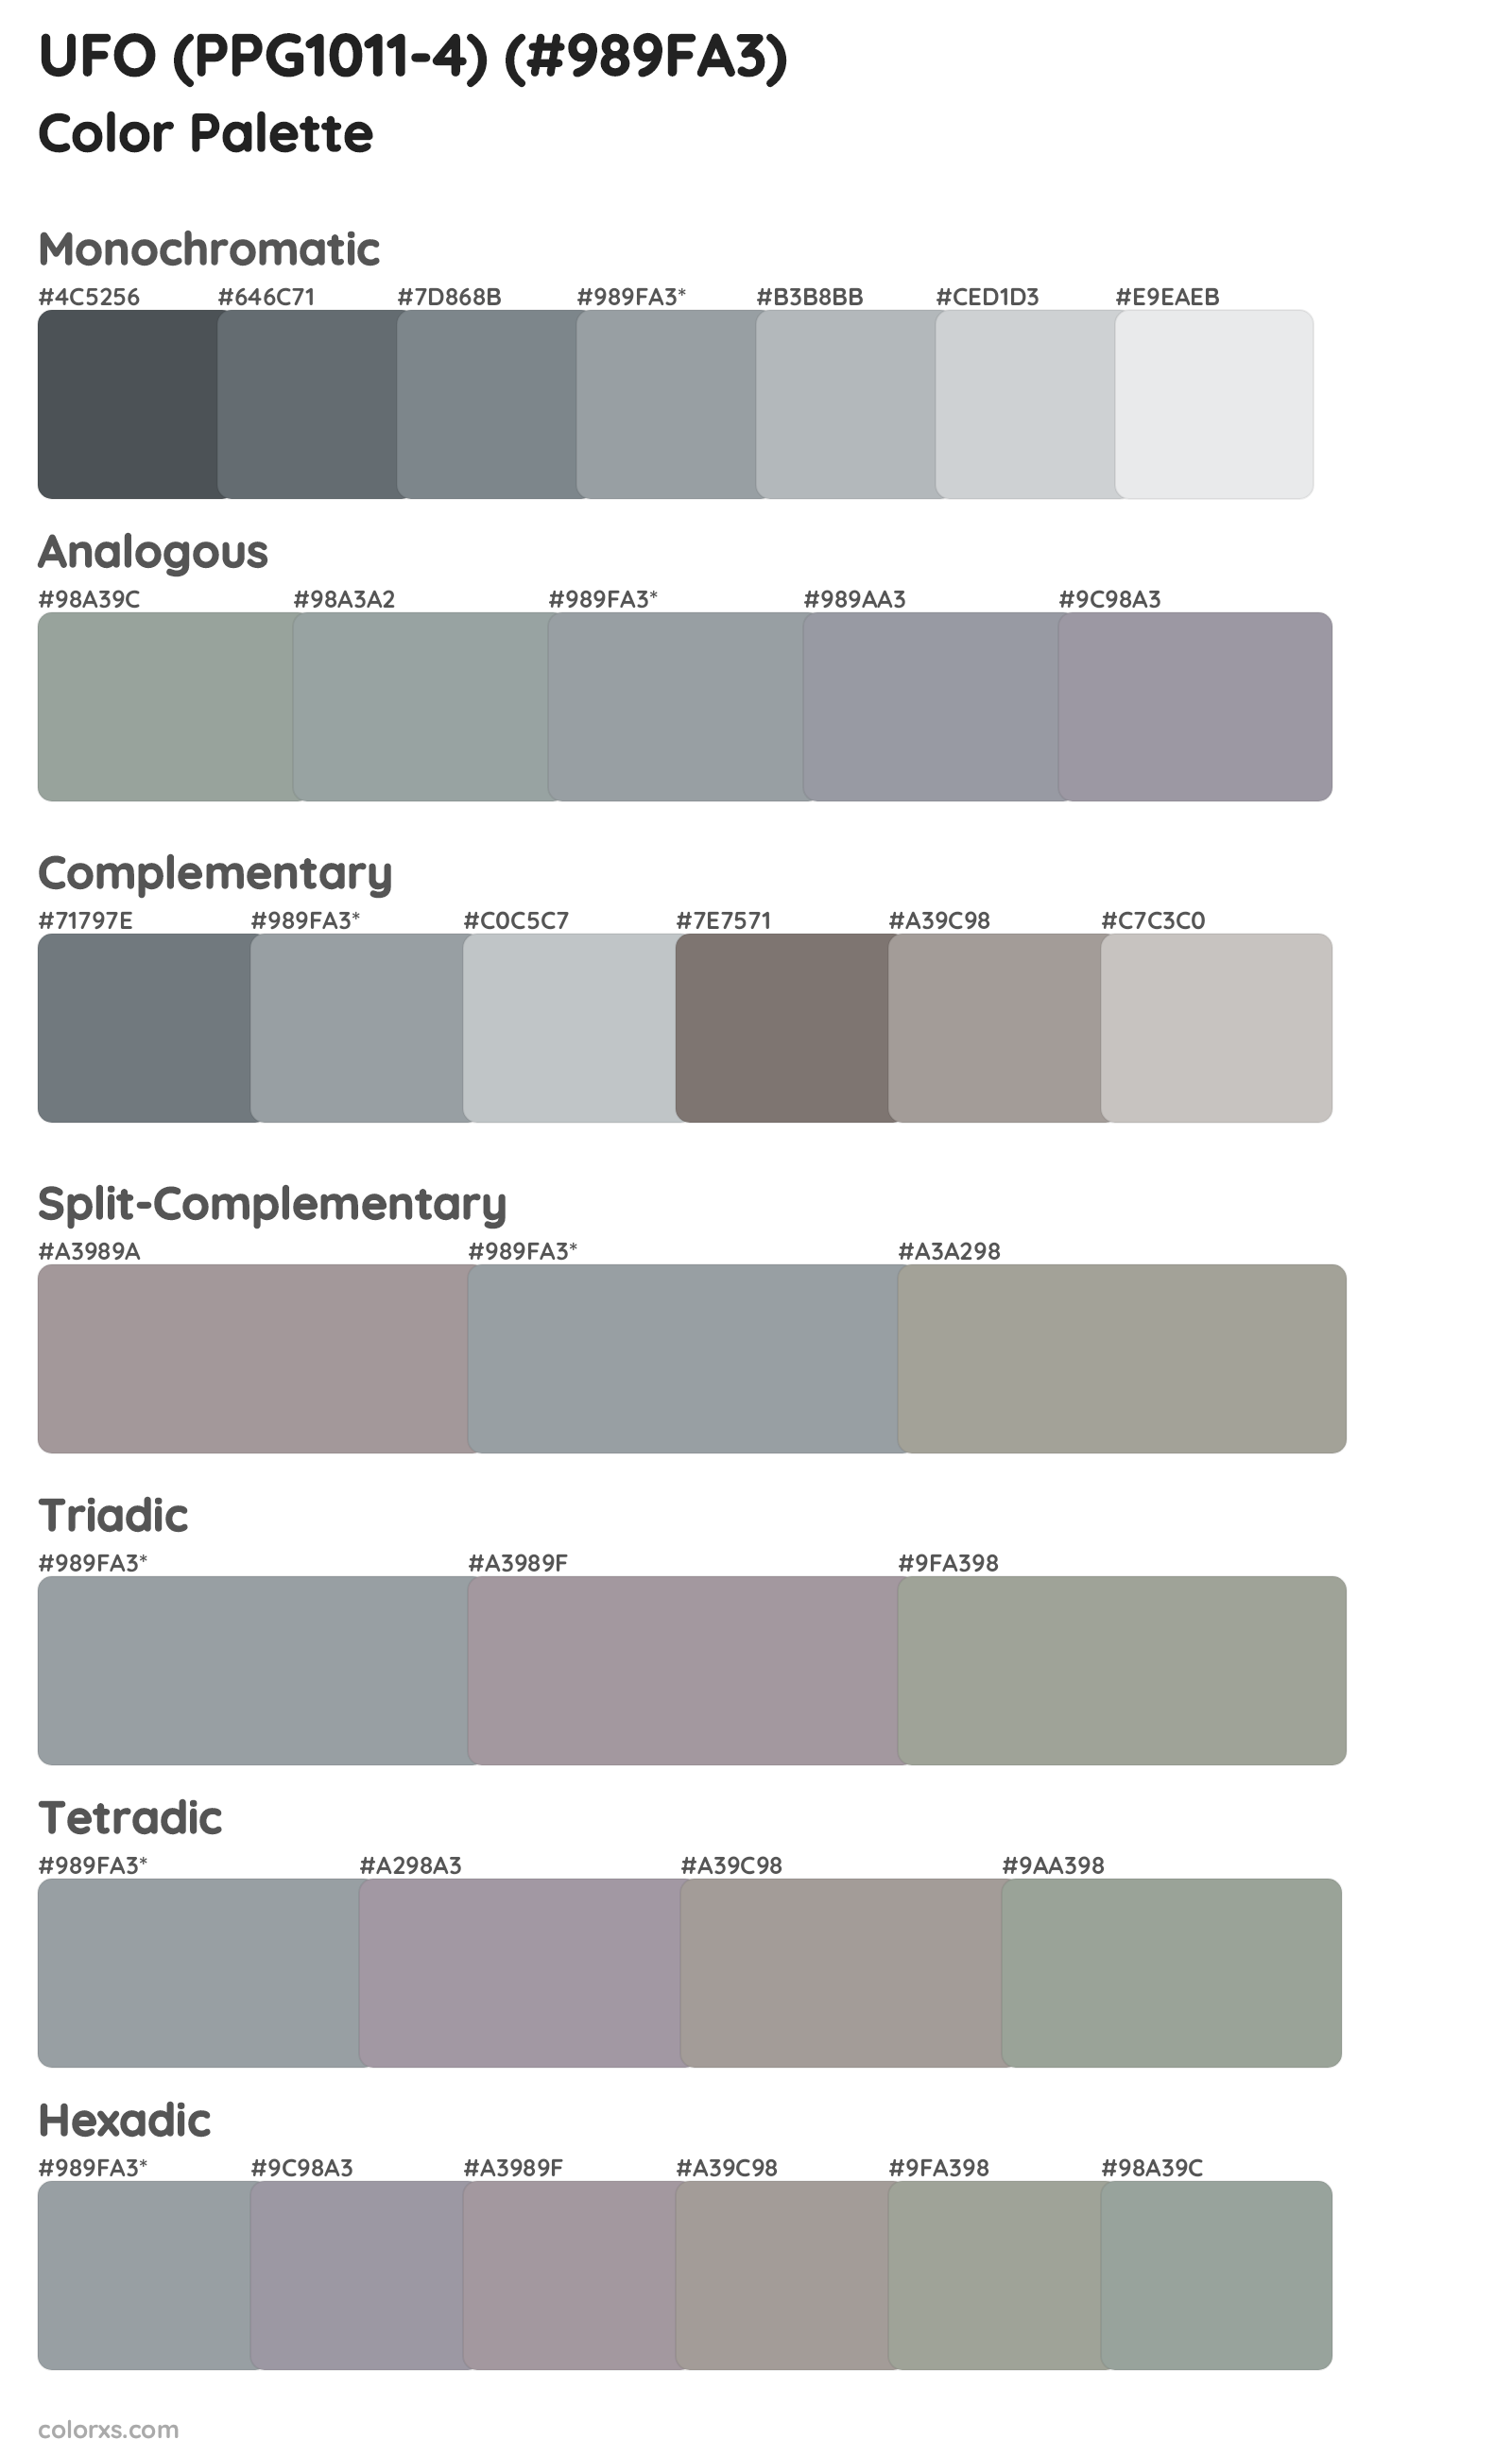 UFO (PPG1011-4) Color Scheme Palettes